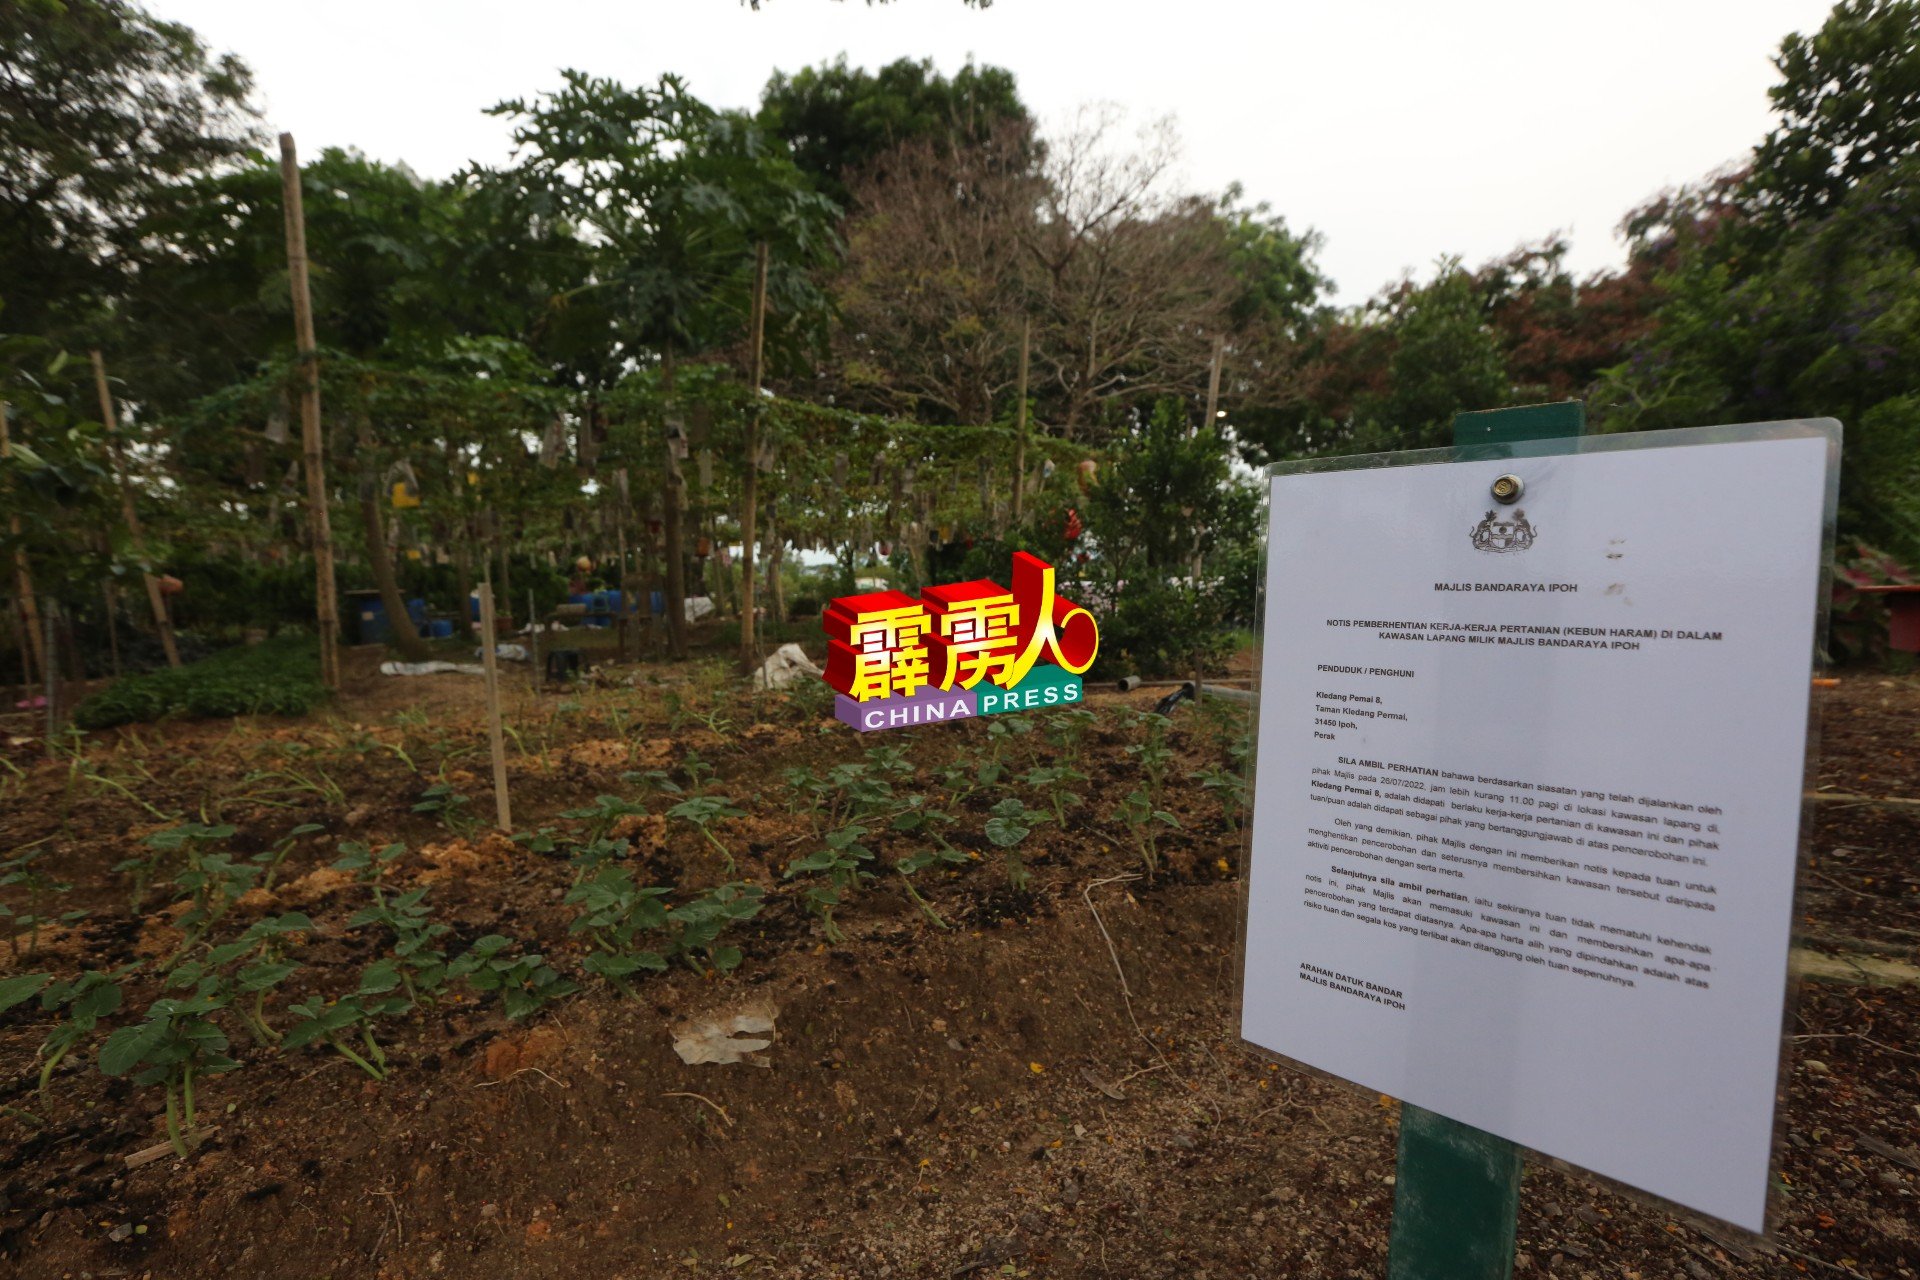 怡保市政厅在该“菜园”张贴要求清除农作物的告示。